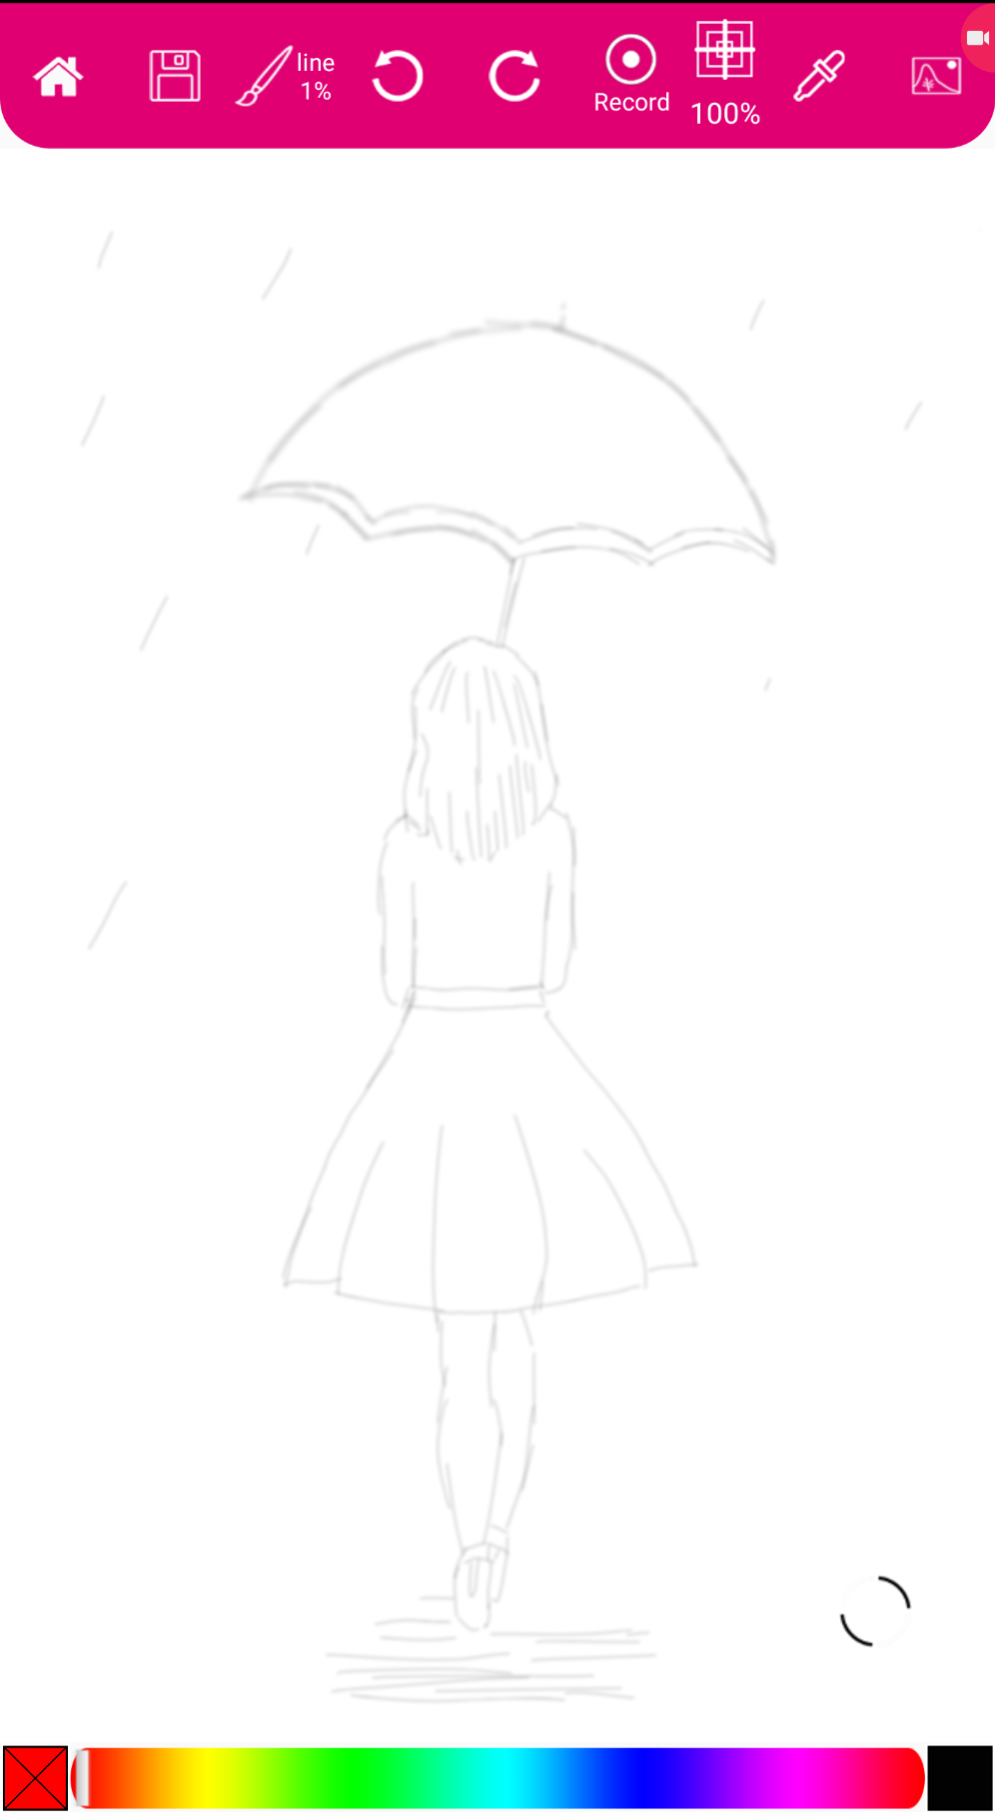 रोती हुई उदास लड़की का चित्र कैसे बनाएं - वास्तव में आसान ड्राइंग ट्यूटोरियल